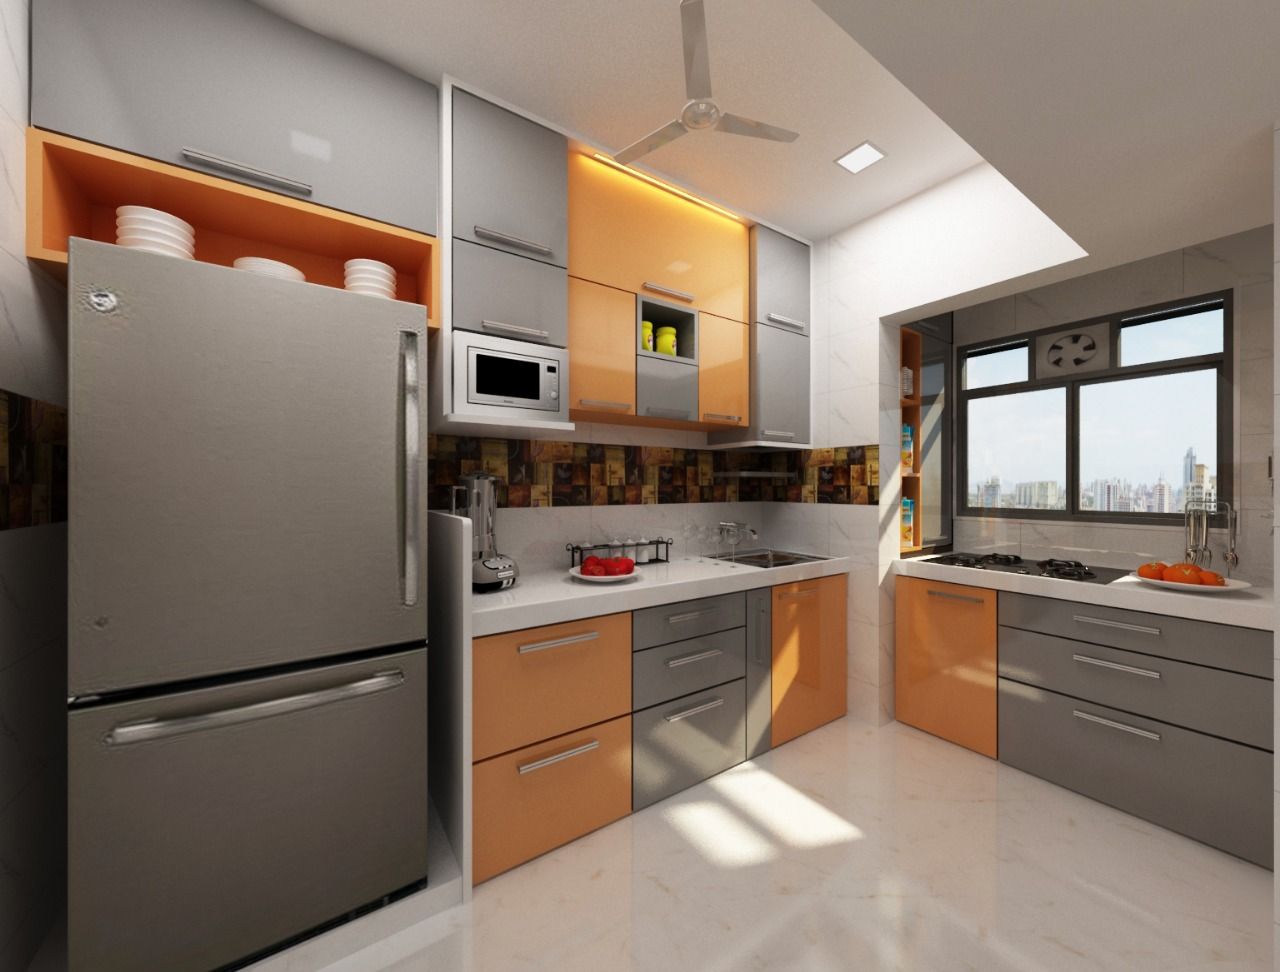 Kitchen Design Ideas Square 4 Design & Build Modern kitchen